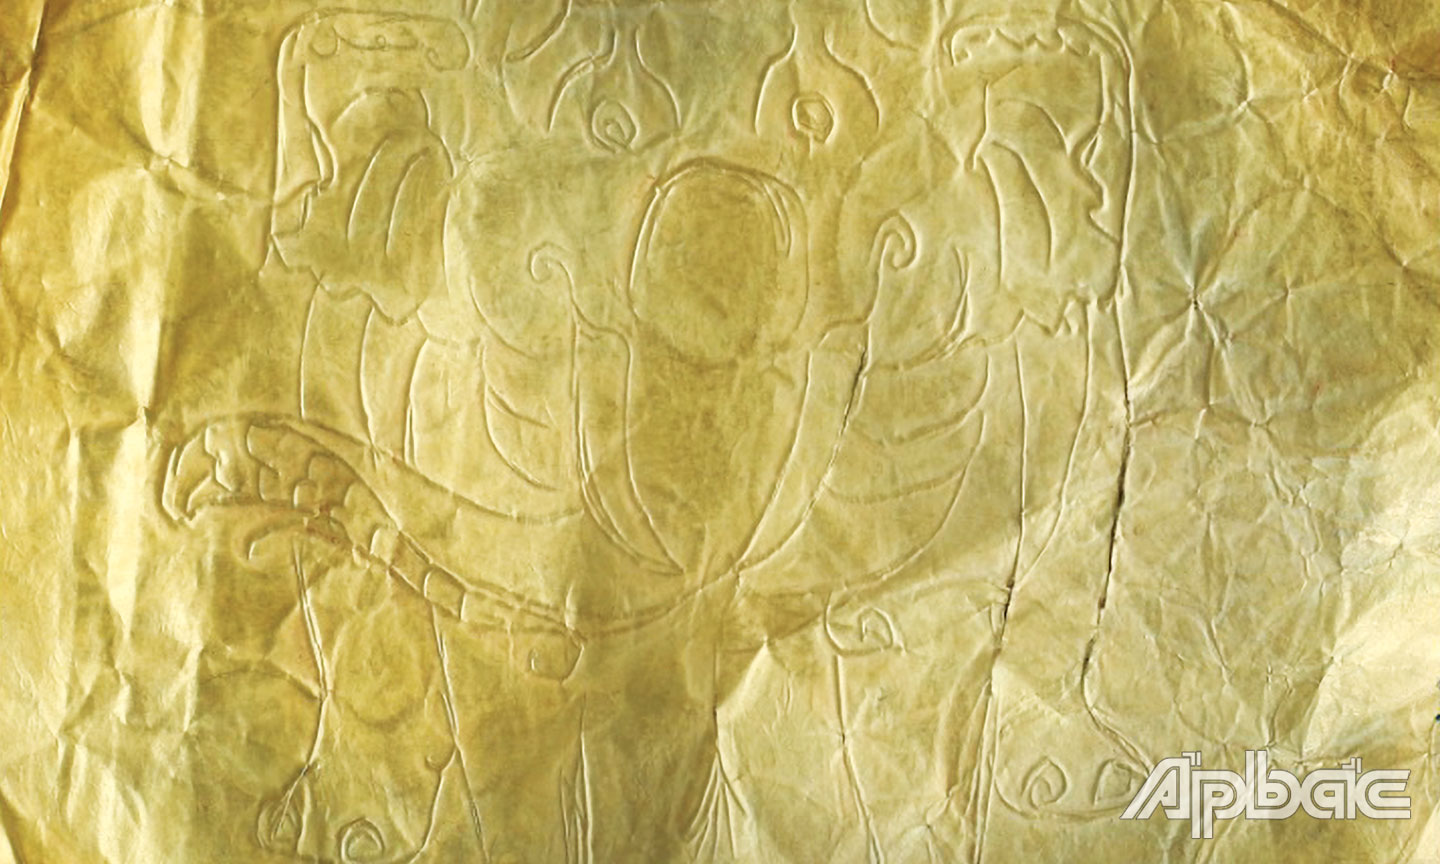 Hoa văn của 1 hiện vật vàng lá chạm khắc hình voi.